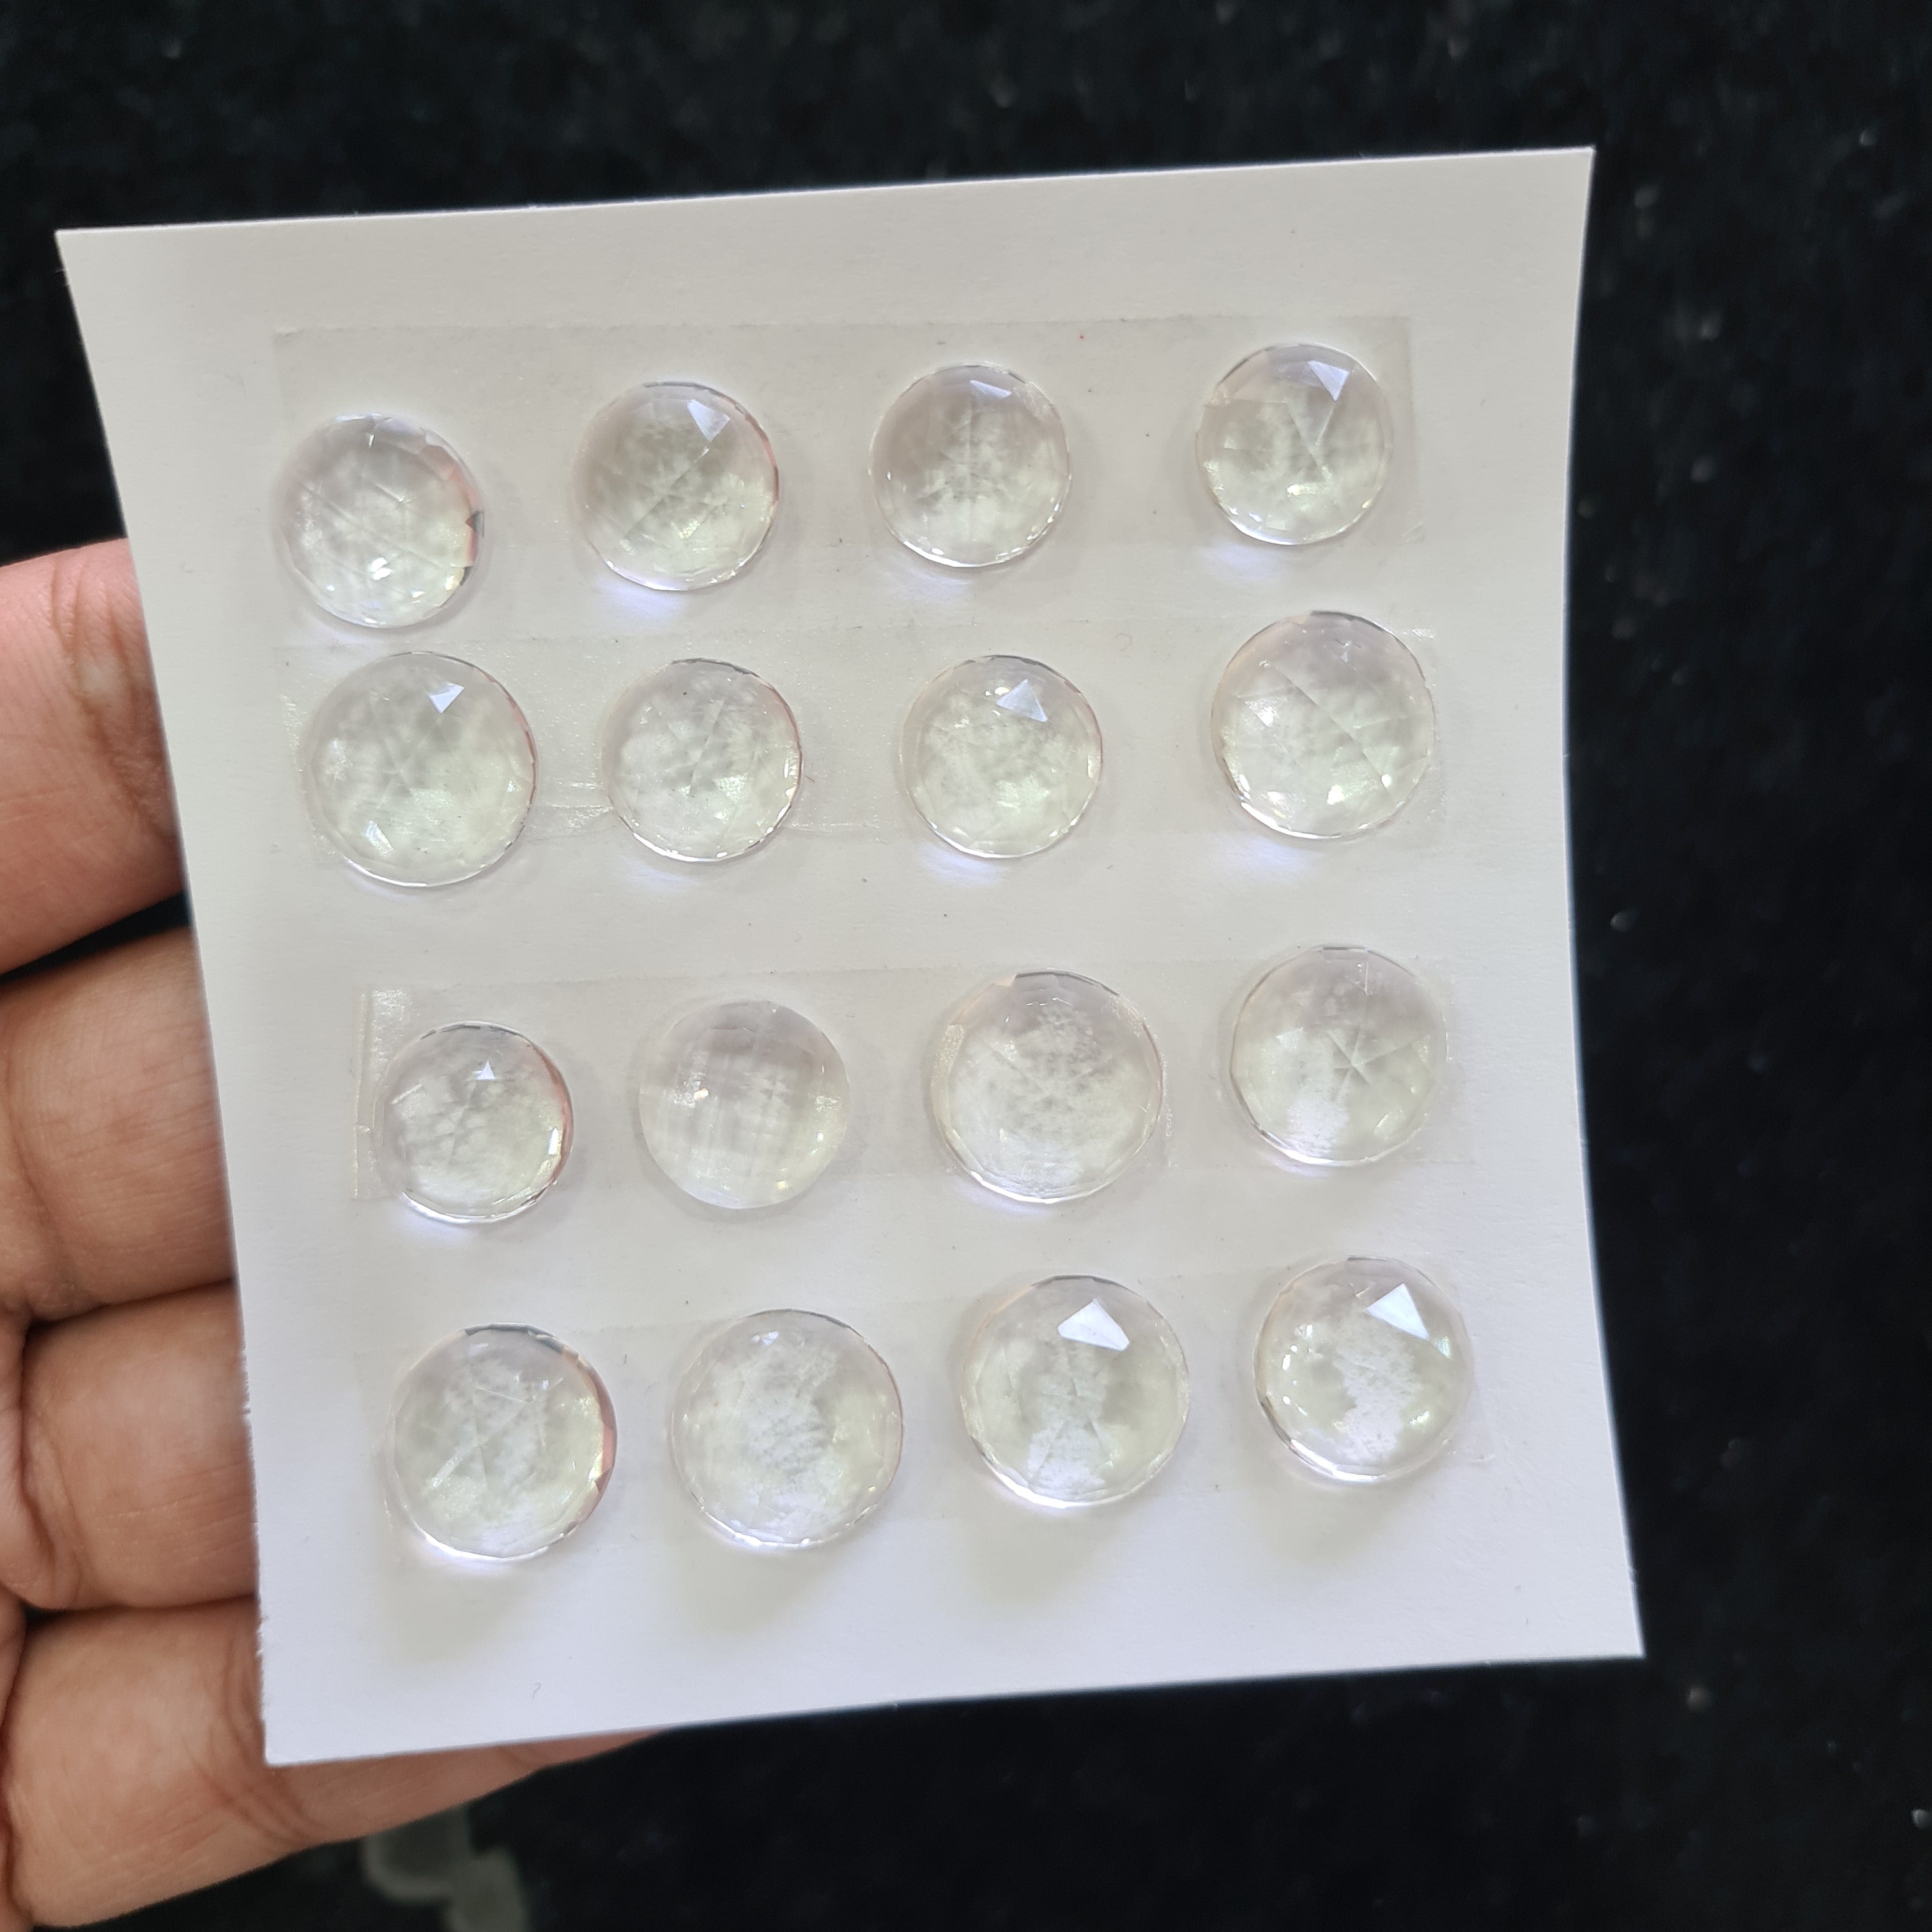 1Card, 16 Pcs Natural Crystal Rosecut Gemstones | Round Shape, 11-14mm Size, - The LabradoriteKing